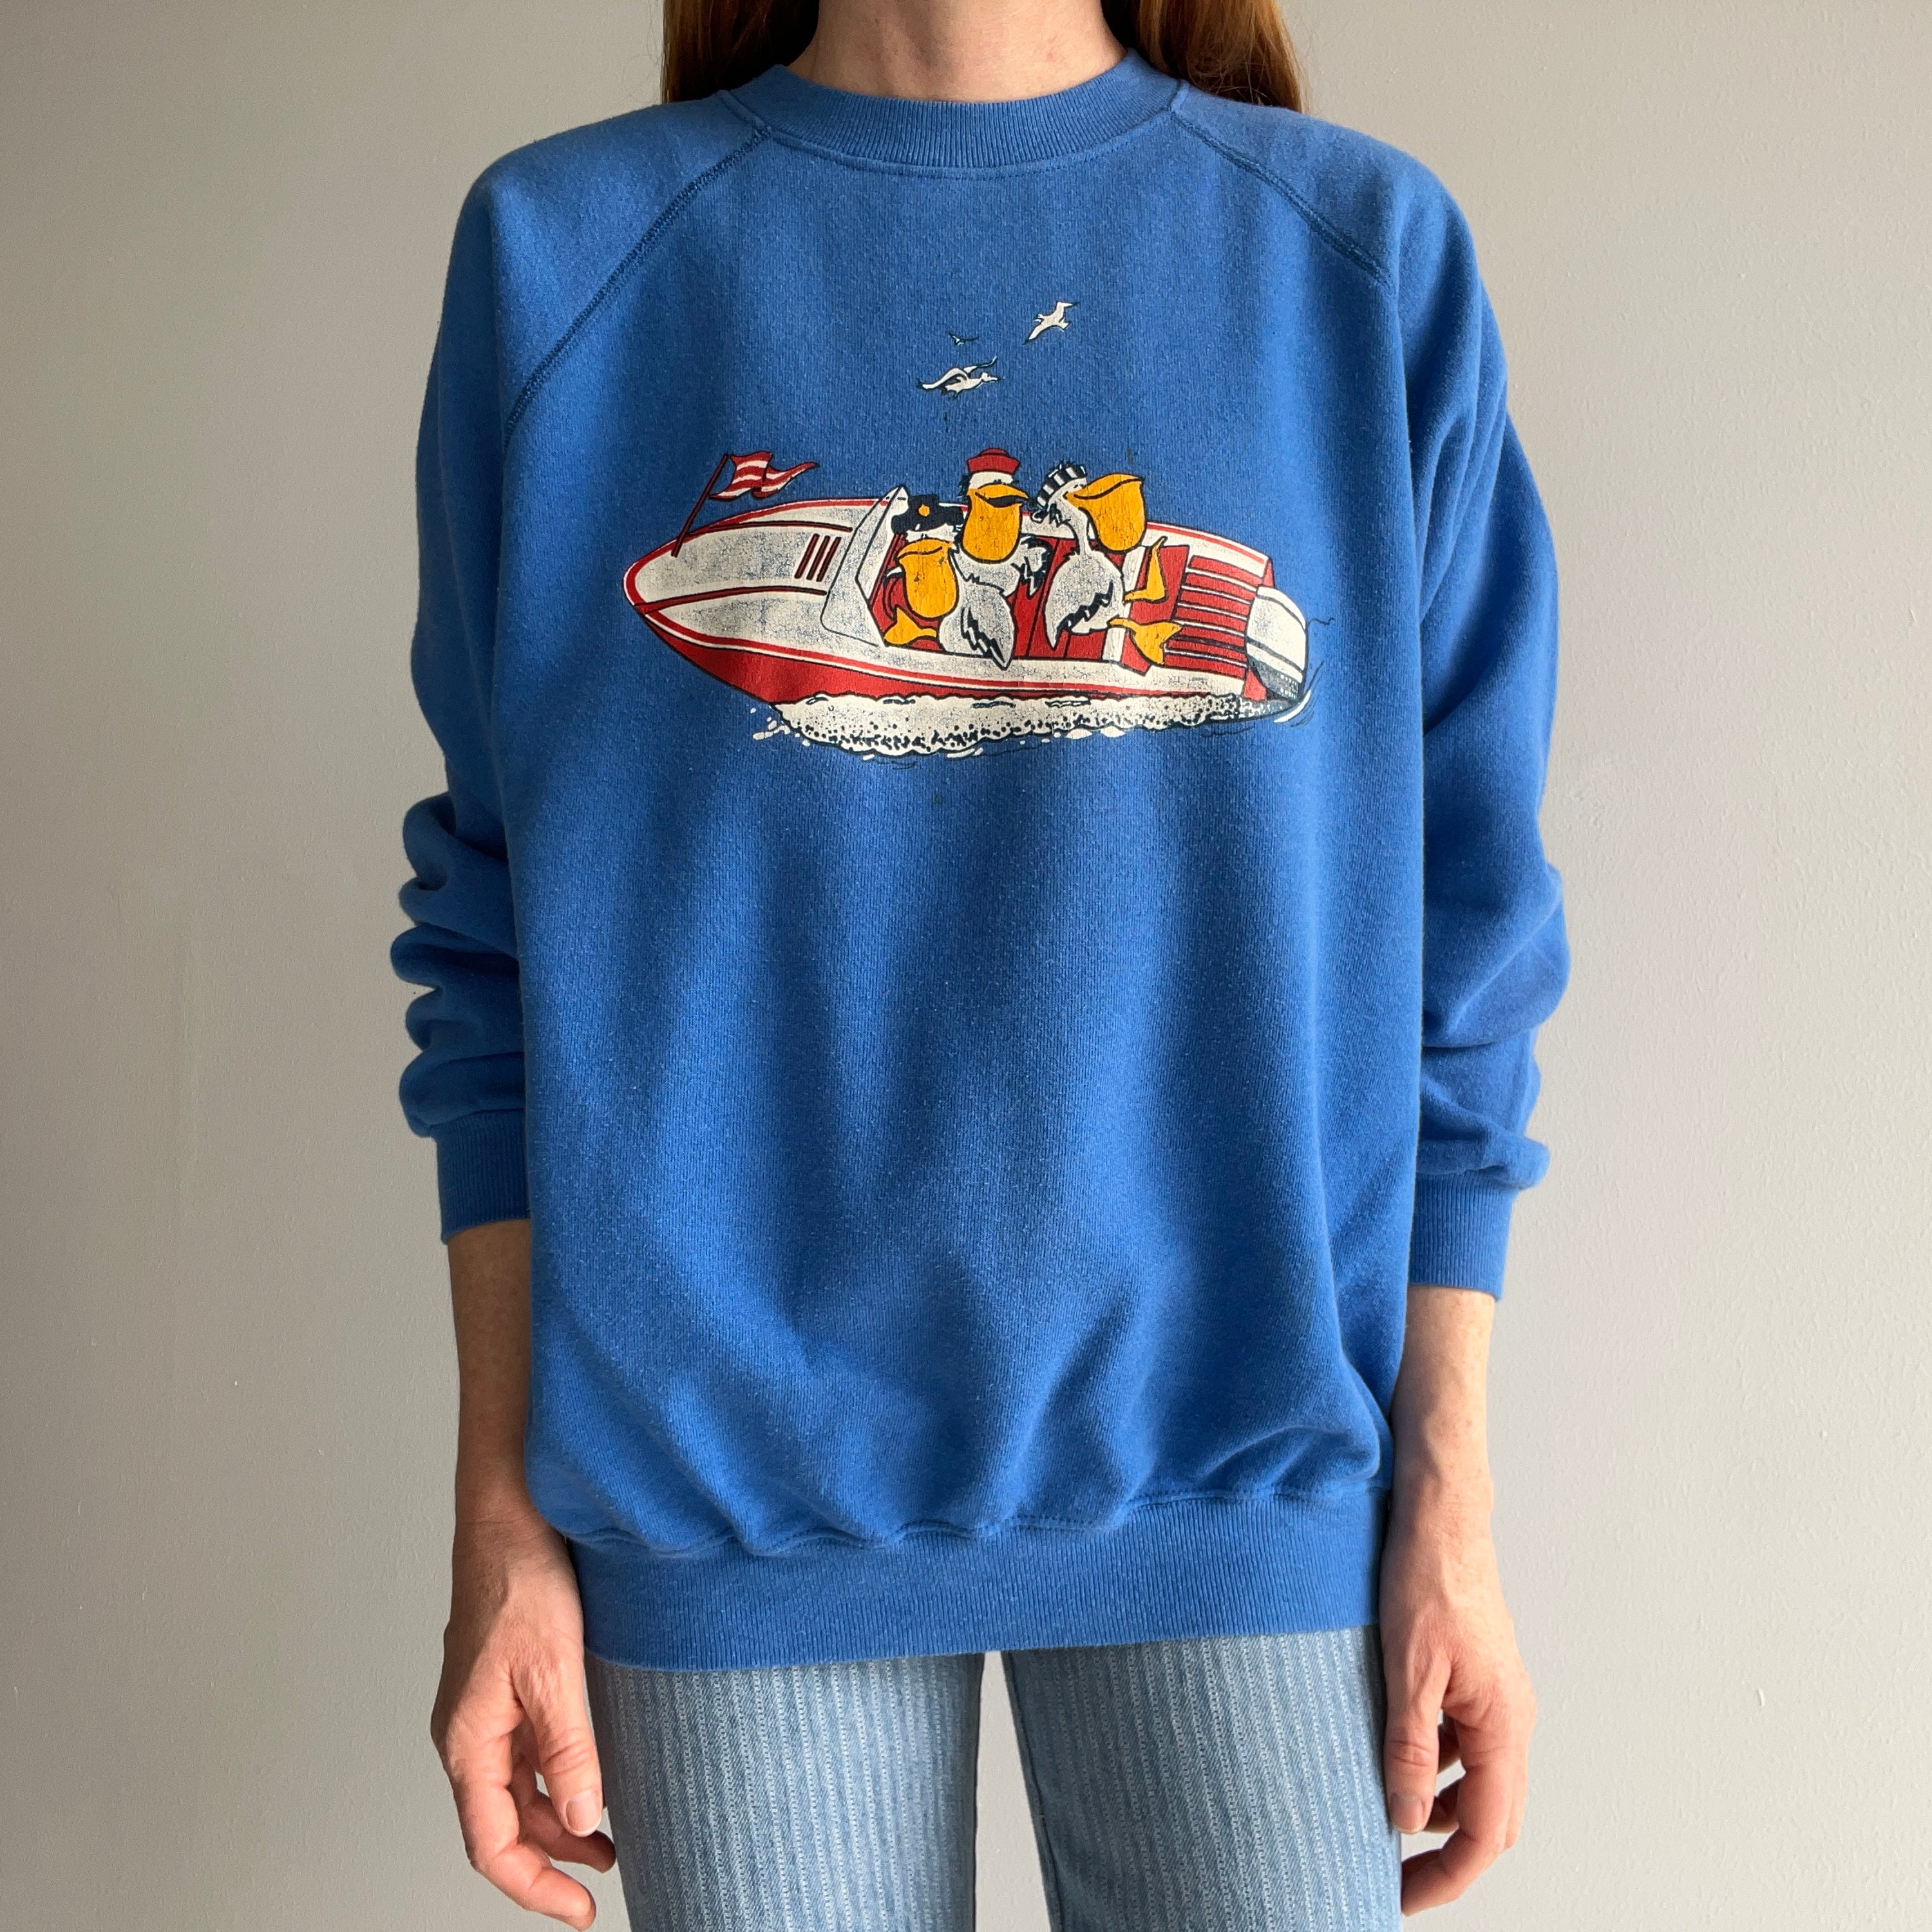 1980s Pelicans on a Speedboat Sweatshirt